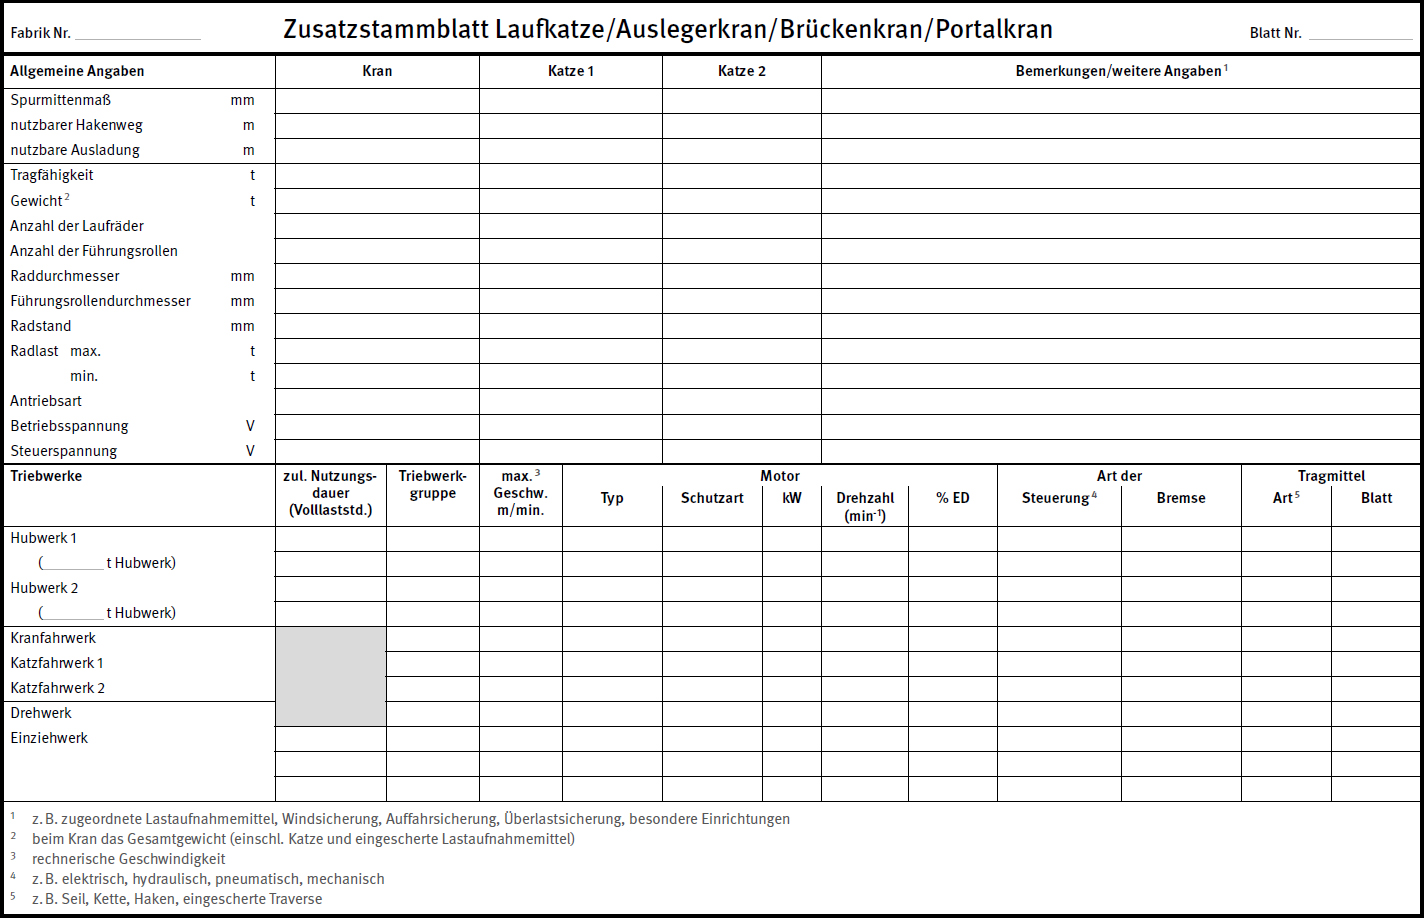 Zusatzstammblatt Laufkatze/Auslegerkran/Brckenkran/Portalkran